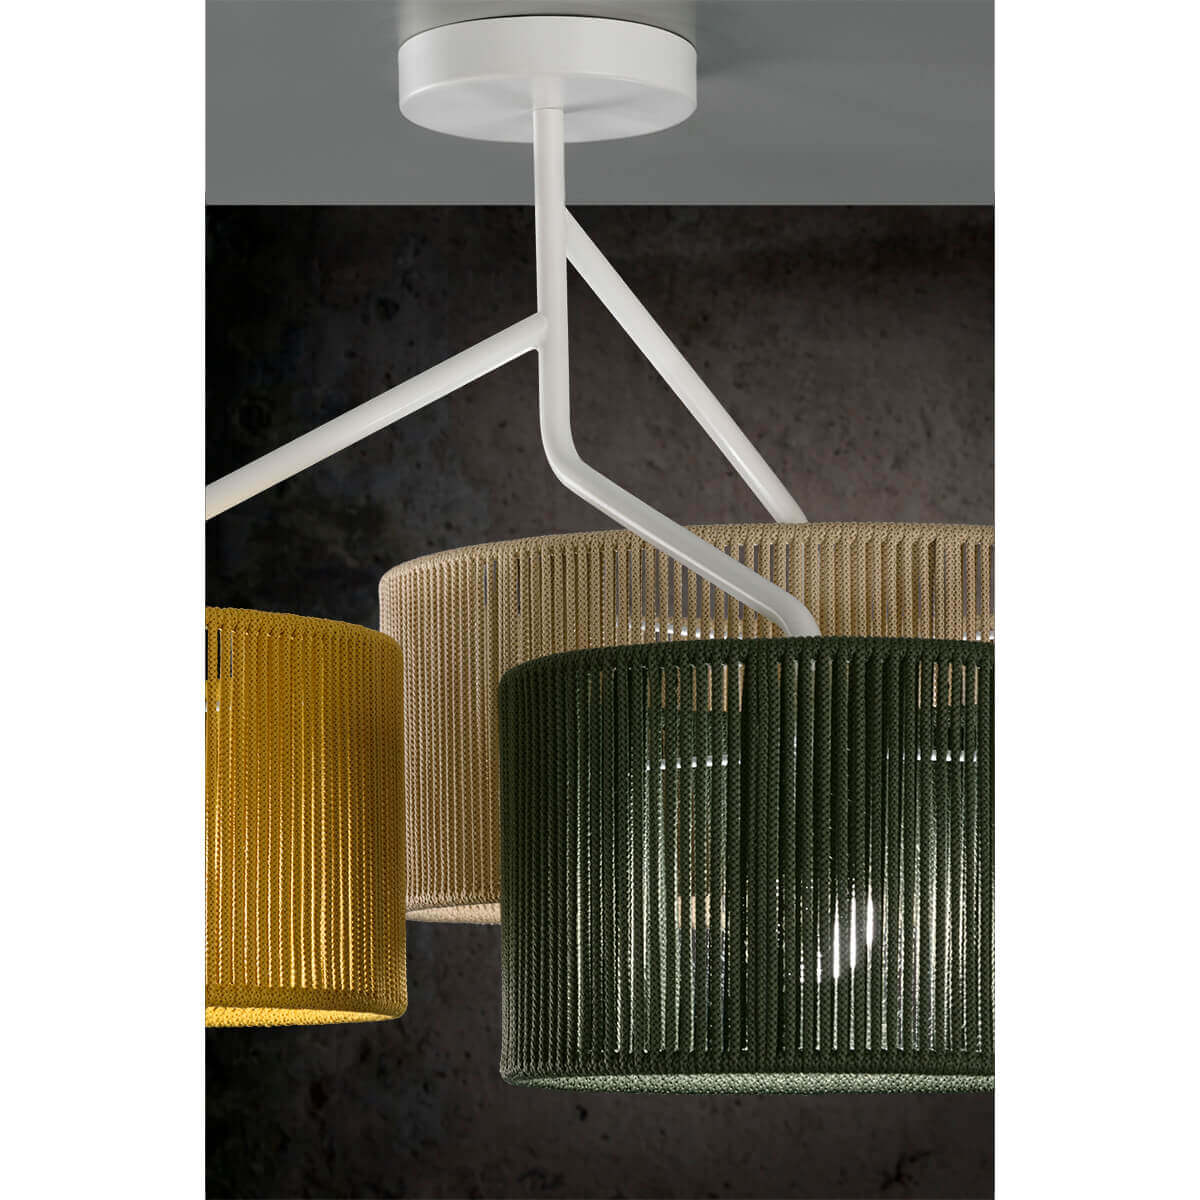 SENIA - Ceiling 3 lampshades | E27 3